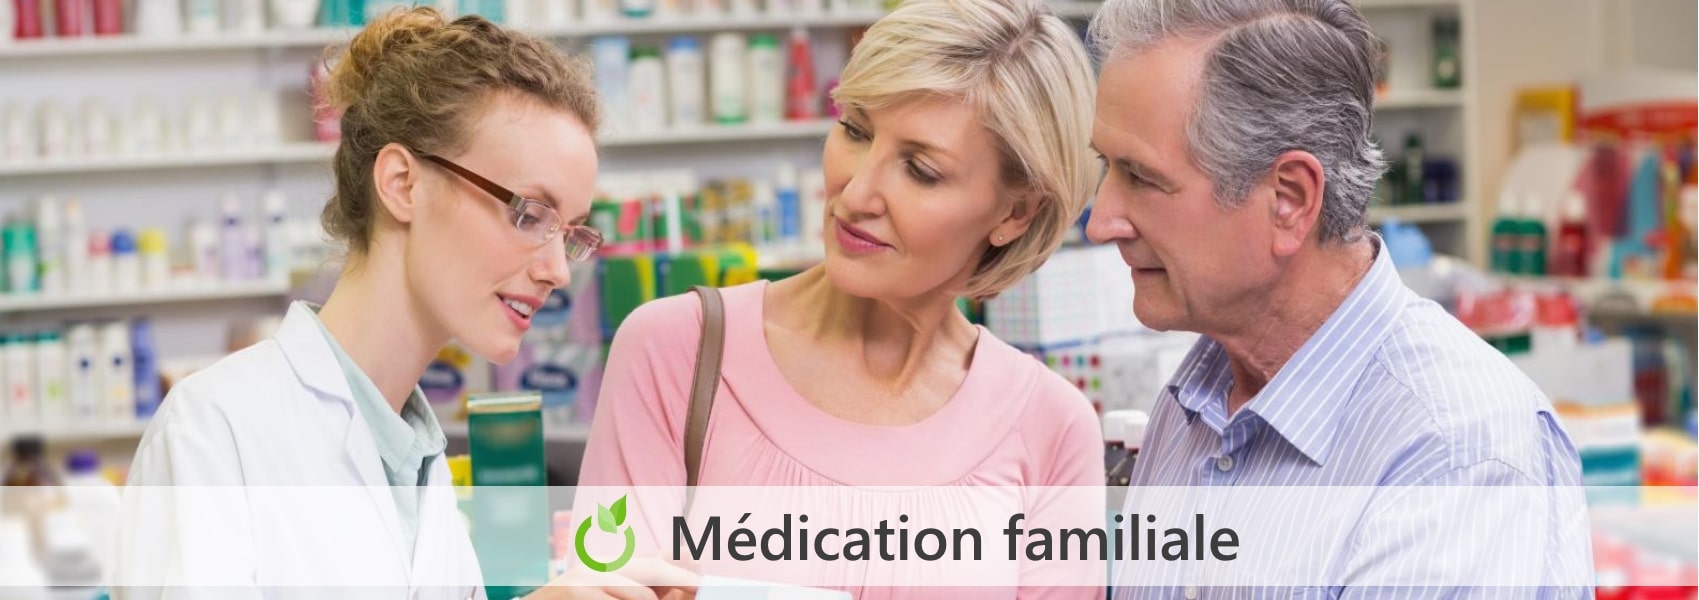 familiale medication en pharmacie à Canteleu 76